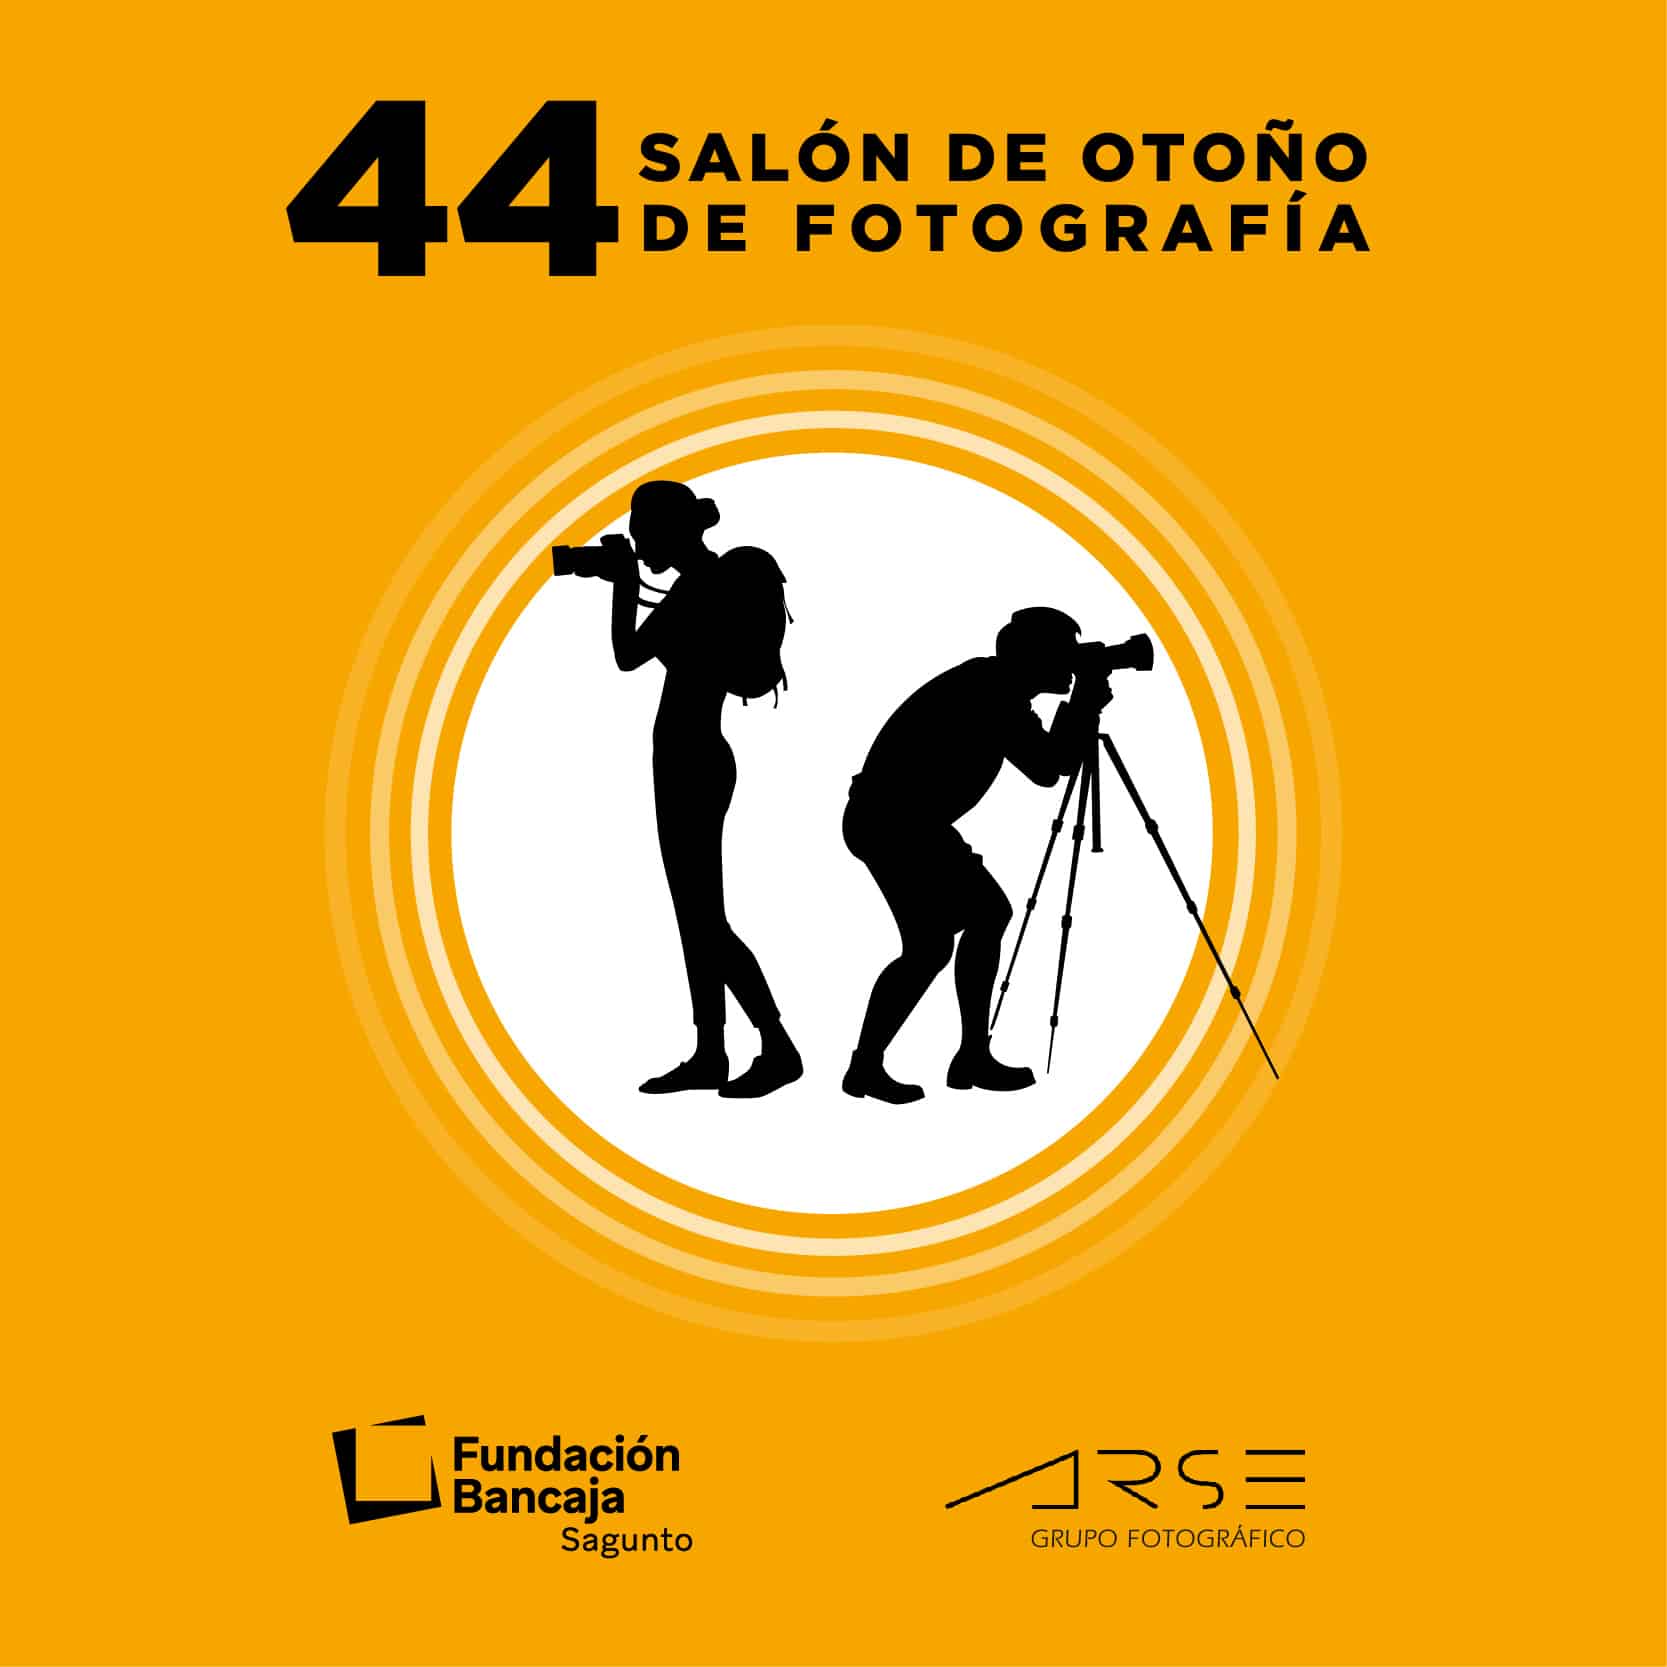 44 Salón de otoño de fotografía de Sagunto